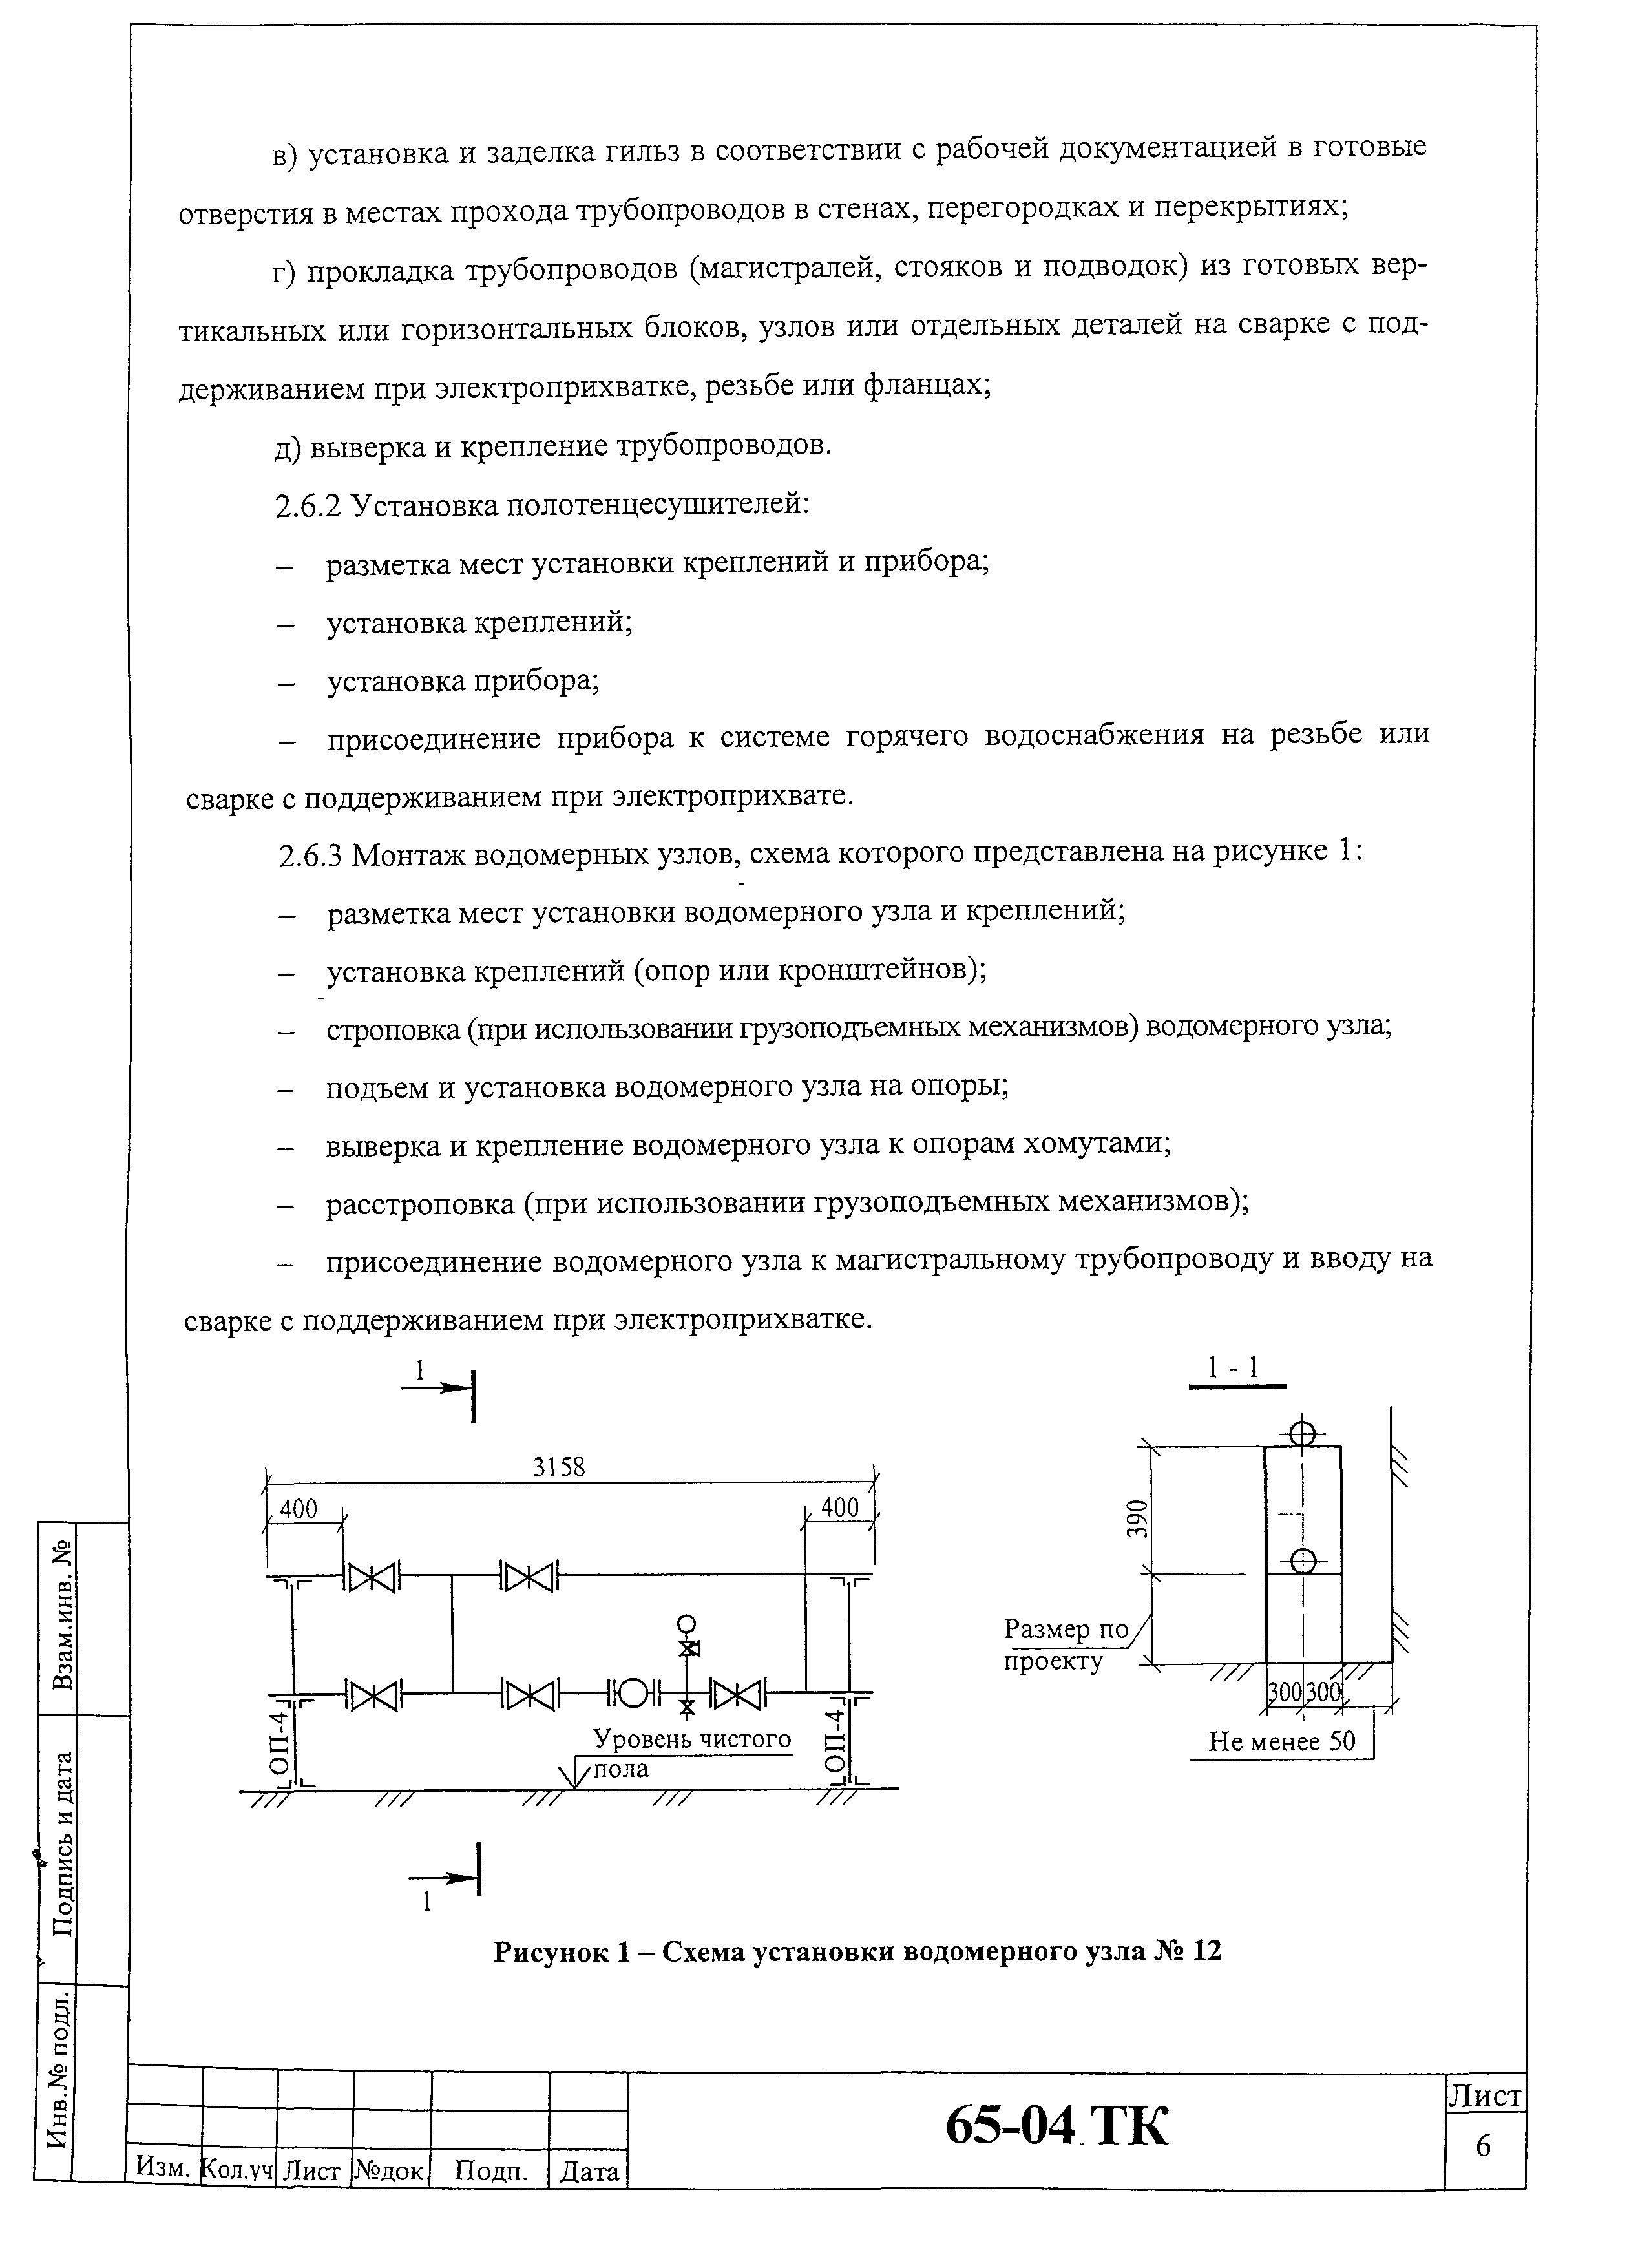 Технологическая карта 65-04 ТК